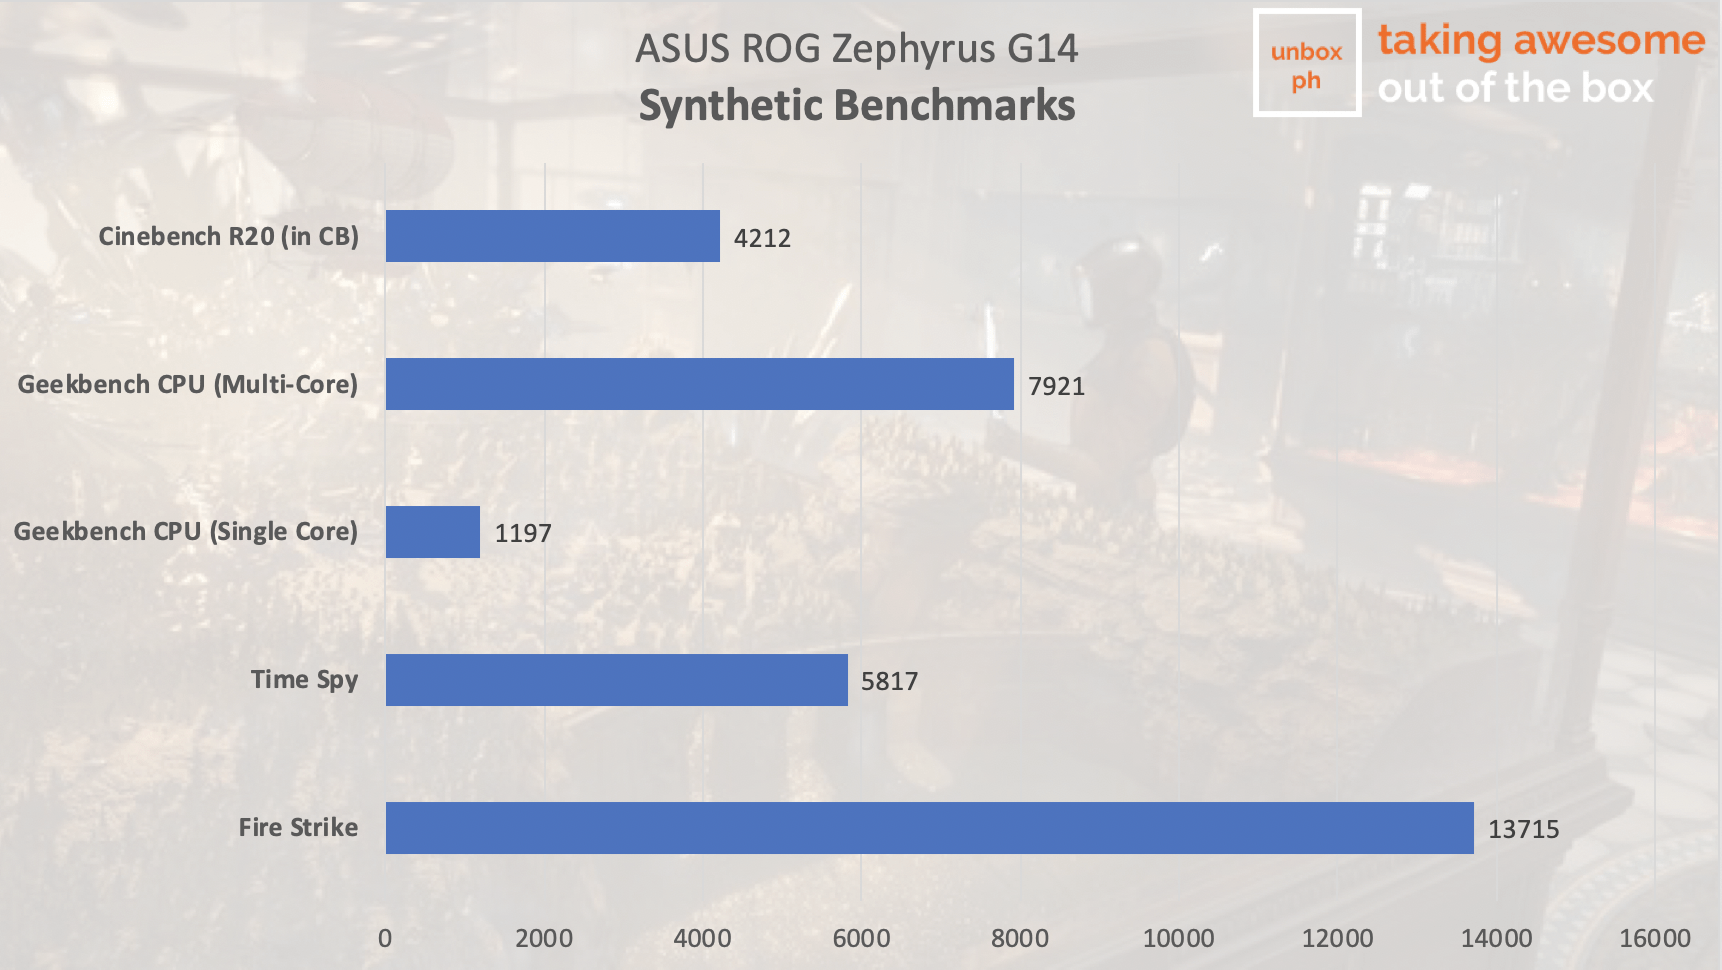 asus rog zephyrus g14 benchmarks